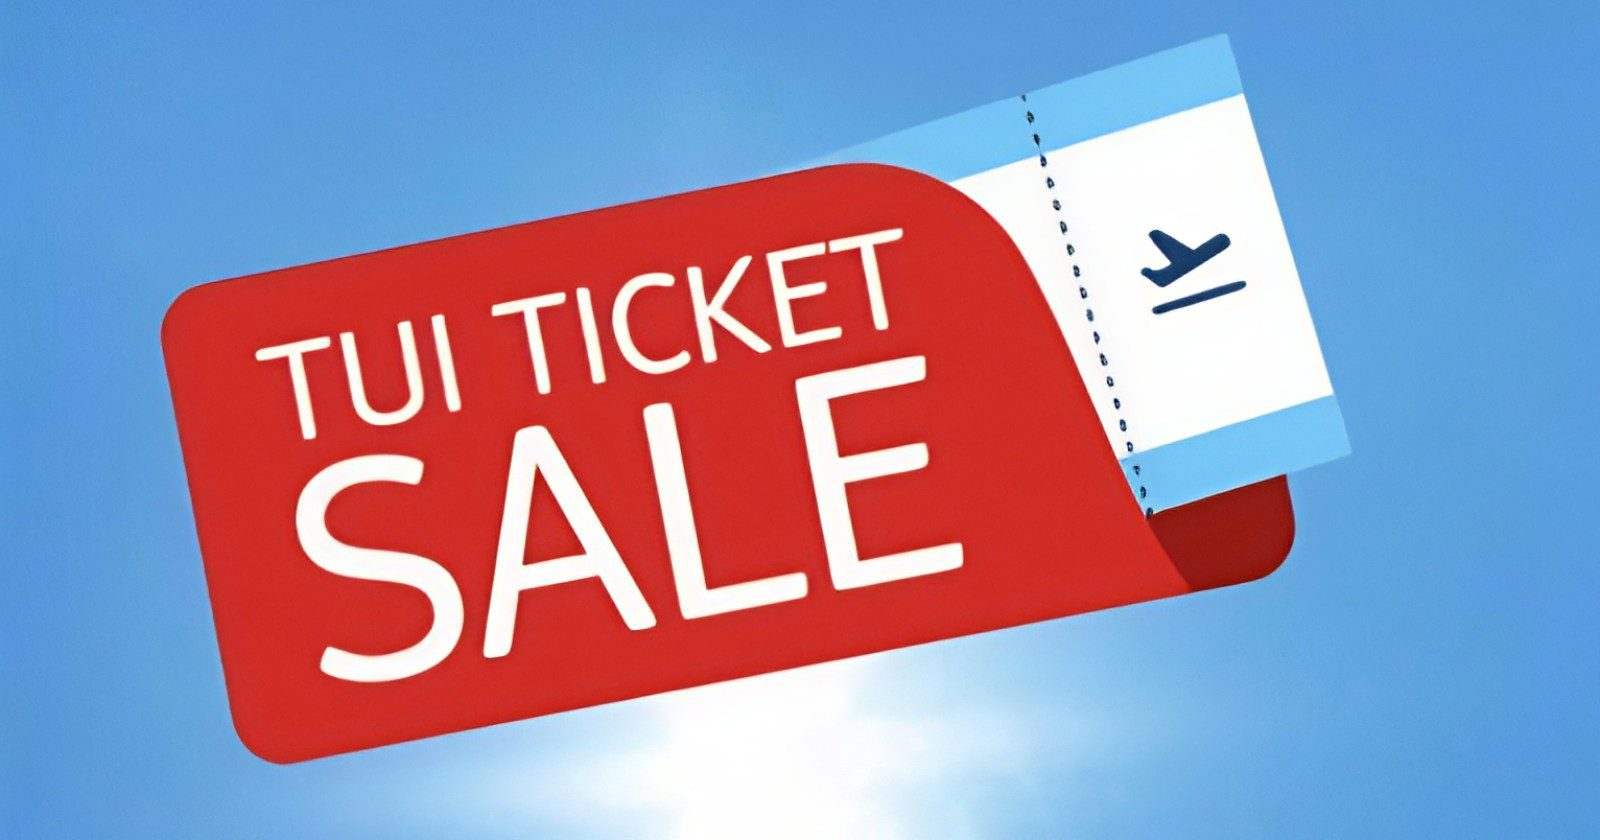 TUI Ticket Sale Curacao